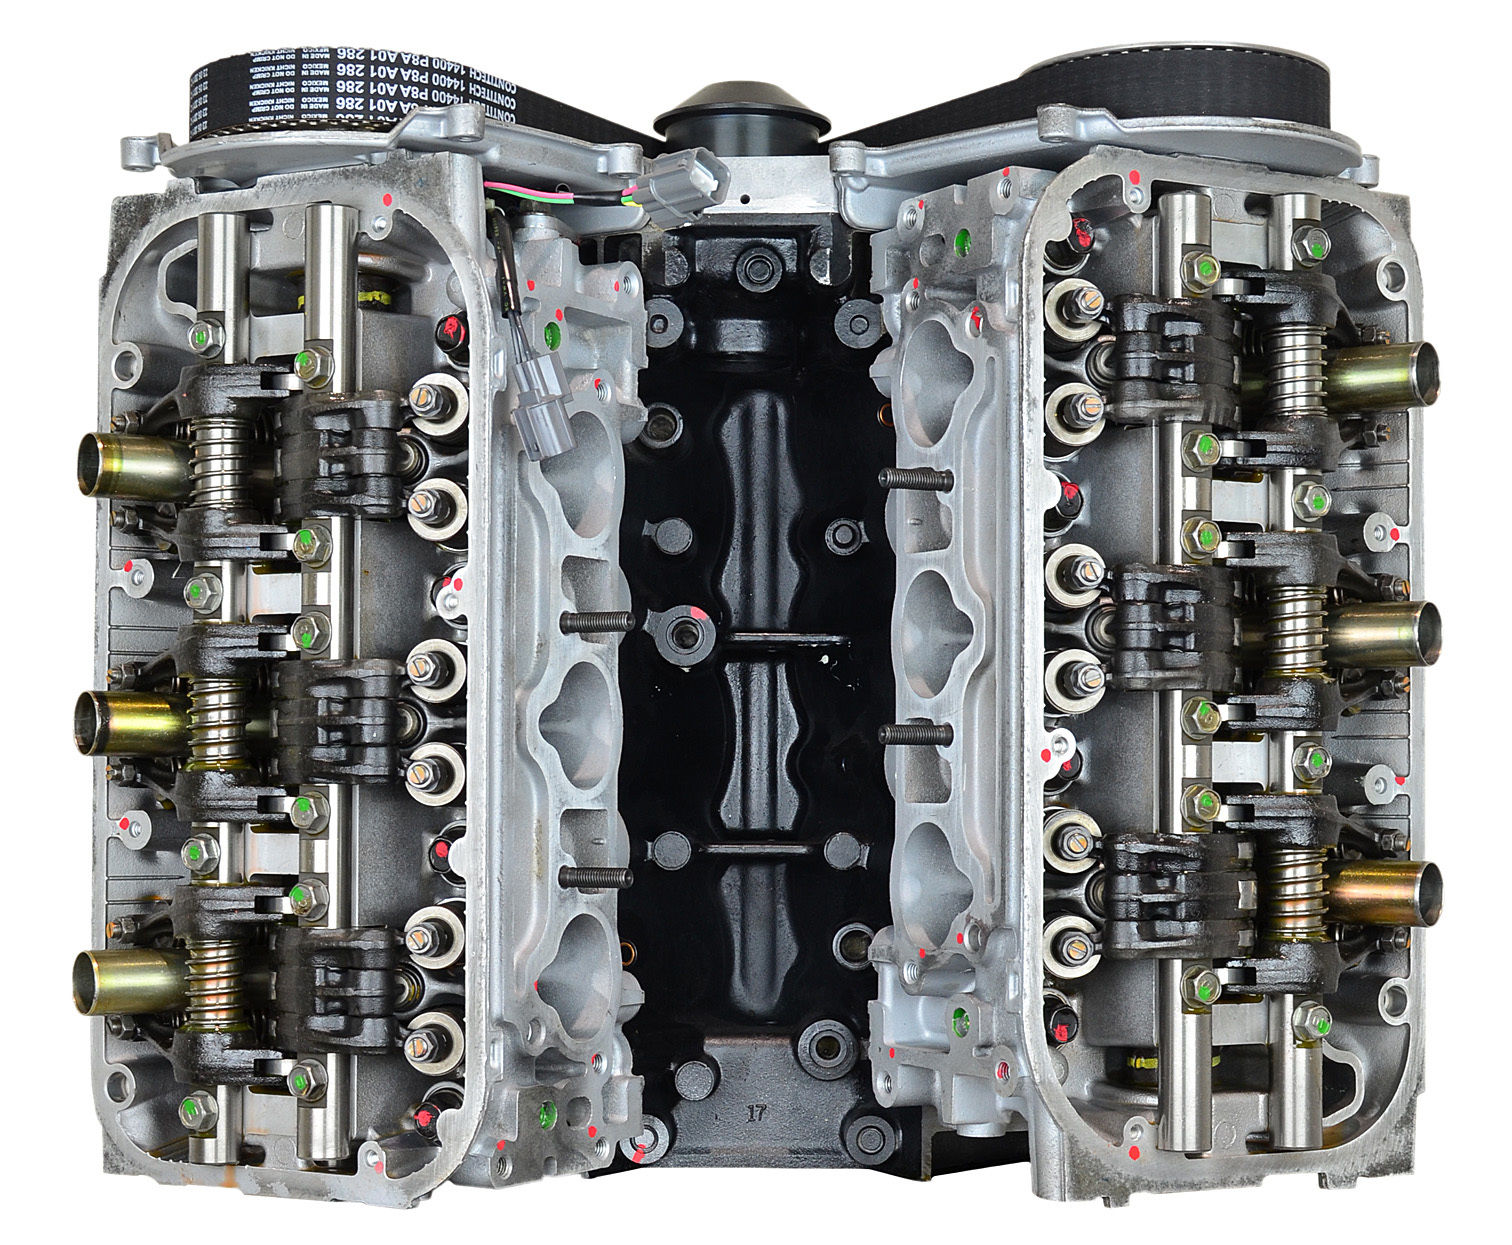 Honda J35A5 rebuilt engine for Honda Odyssey